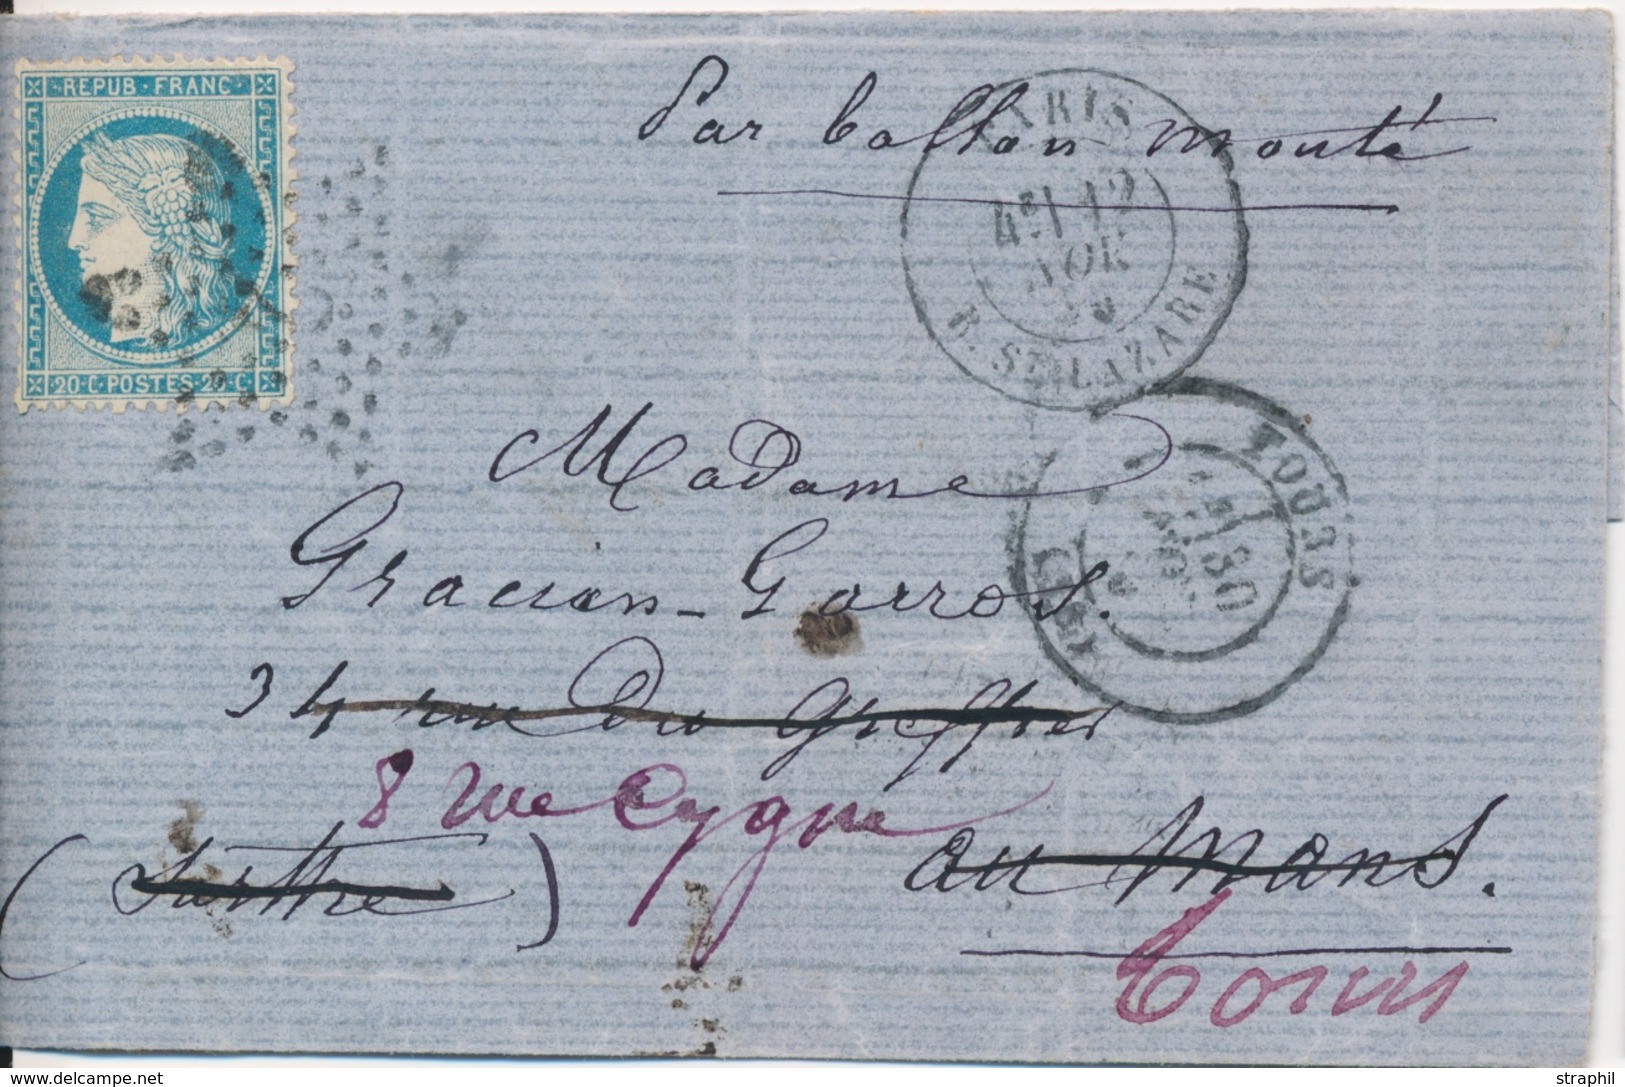 LAC BALLONS MONTES - LAC - Le DAGUERRE - LMM - Pos 3568 Sur N°37 (défect.) - CàD ST DENIS/SEINE 10/11/70 Dest. Départ Du - Guerre De 1870